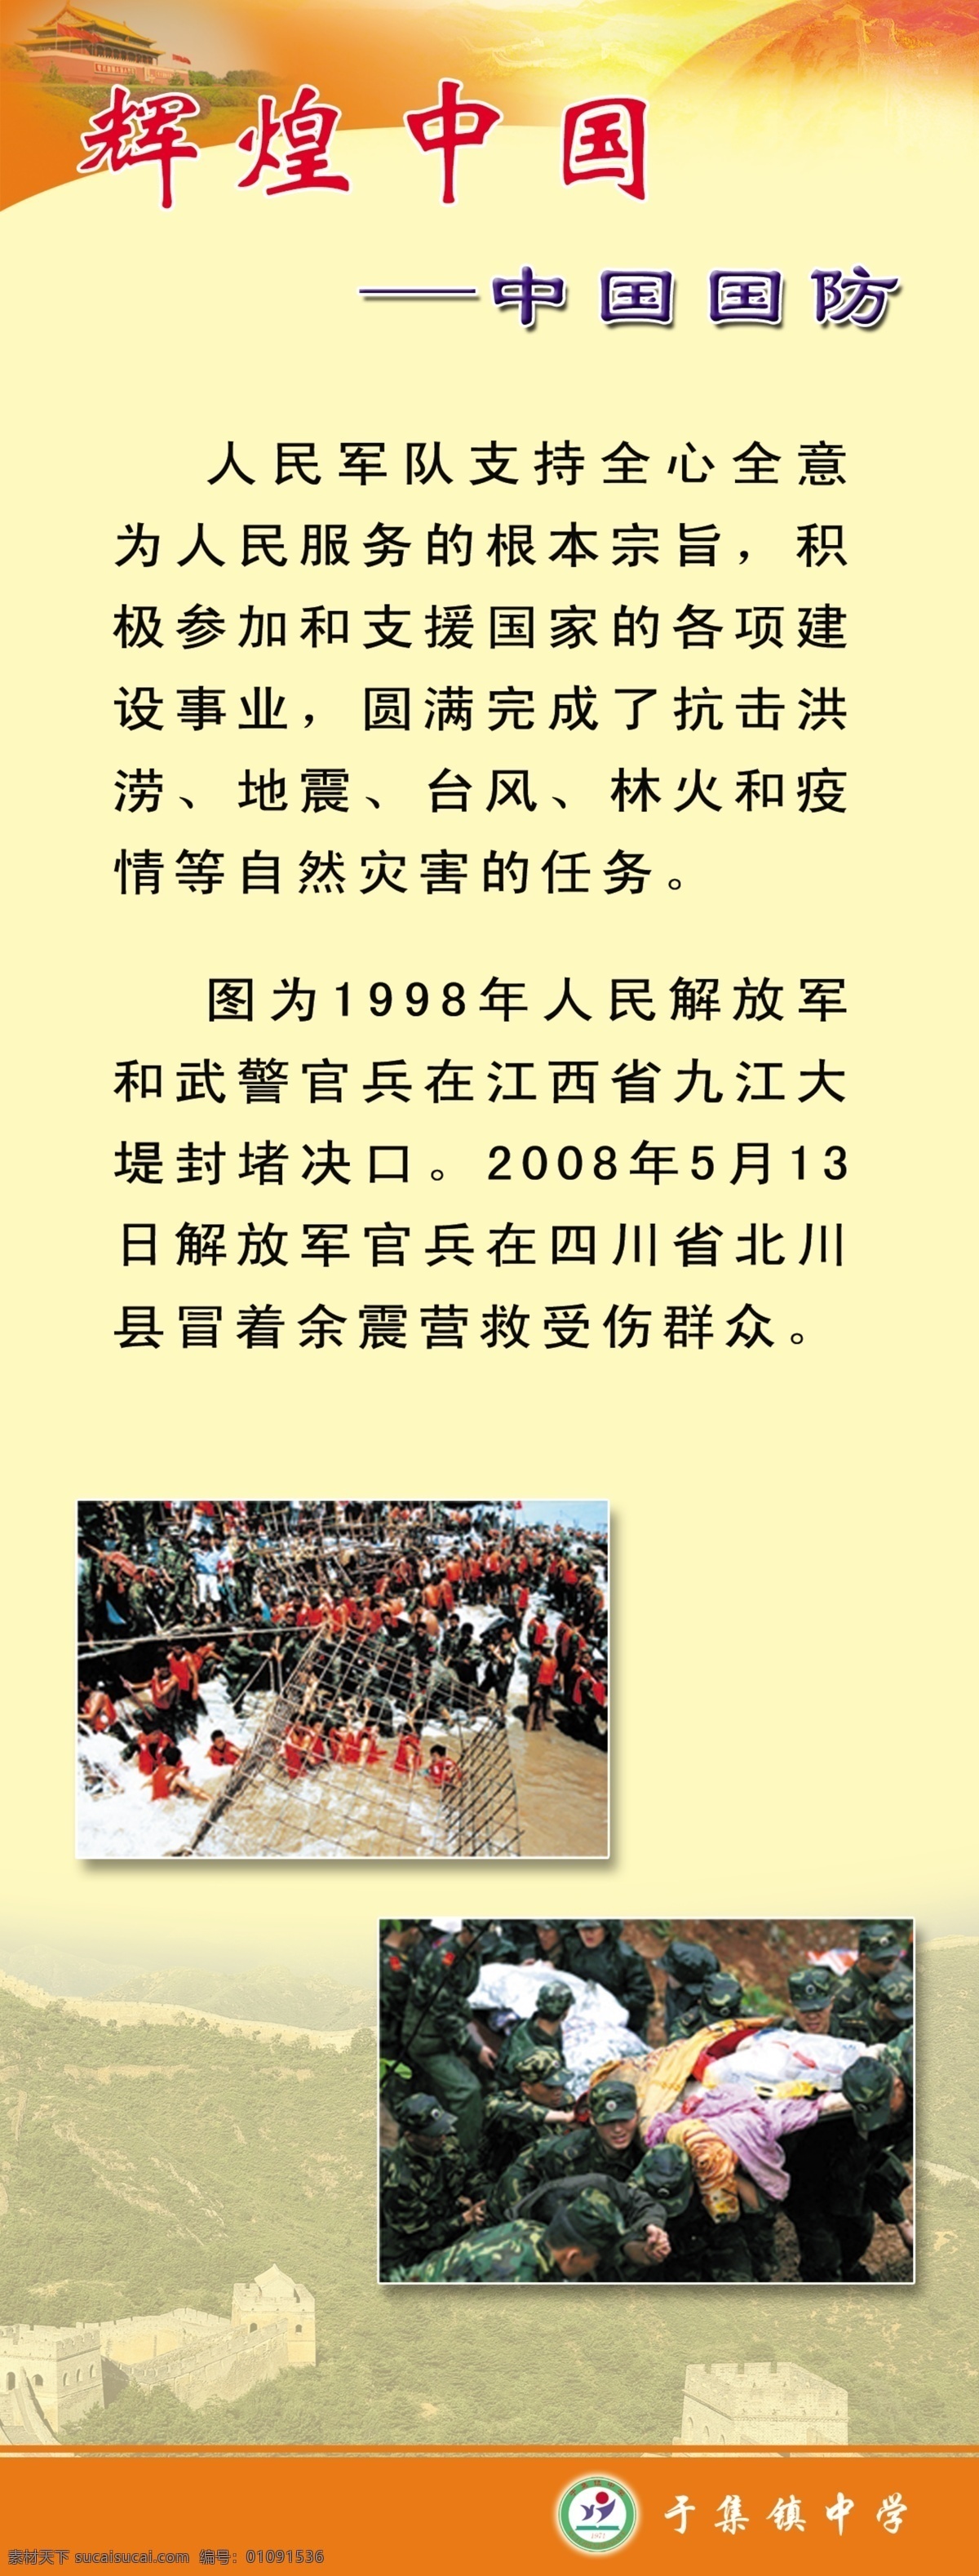 中国辉煌 中国 辉煌 国防 学校国防教育 国防教育 学校类 展板模板 广告设计模板 源文件